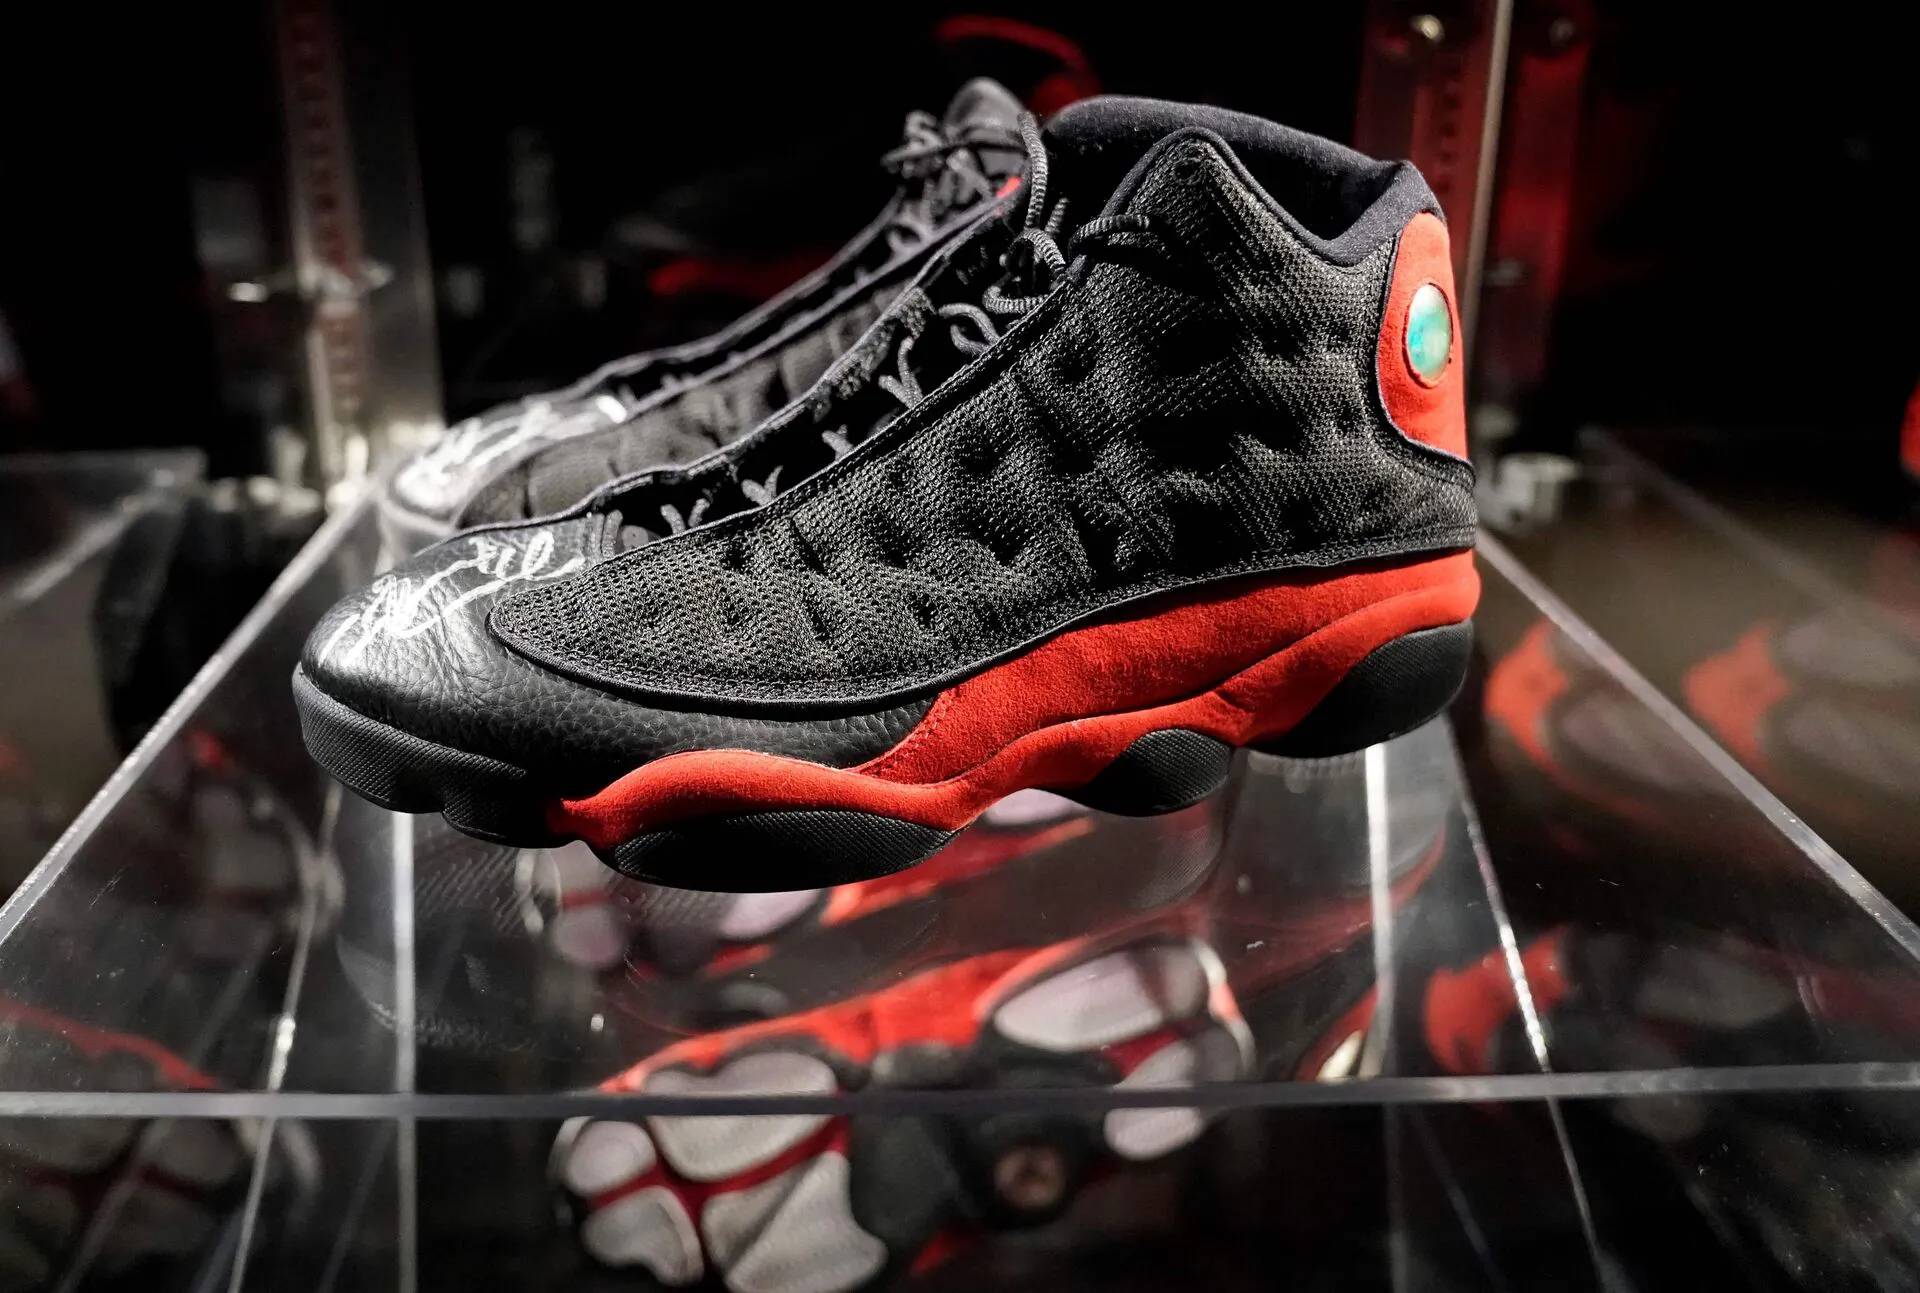 åbenbaring Encyclopedia kål Ikonisk Michael Jordan-sko solgt for kæmpe millionbeløb | SE og HØR